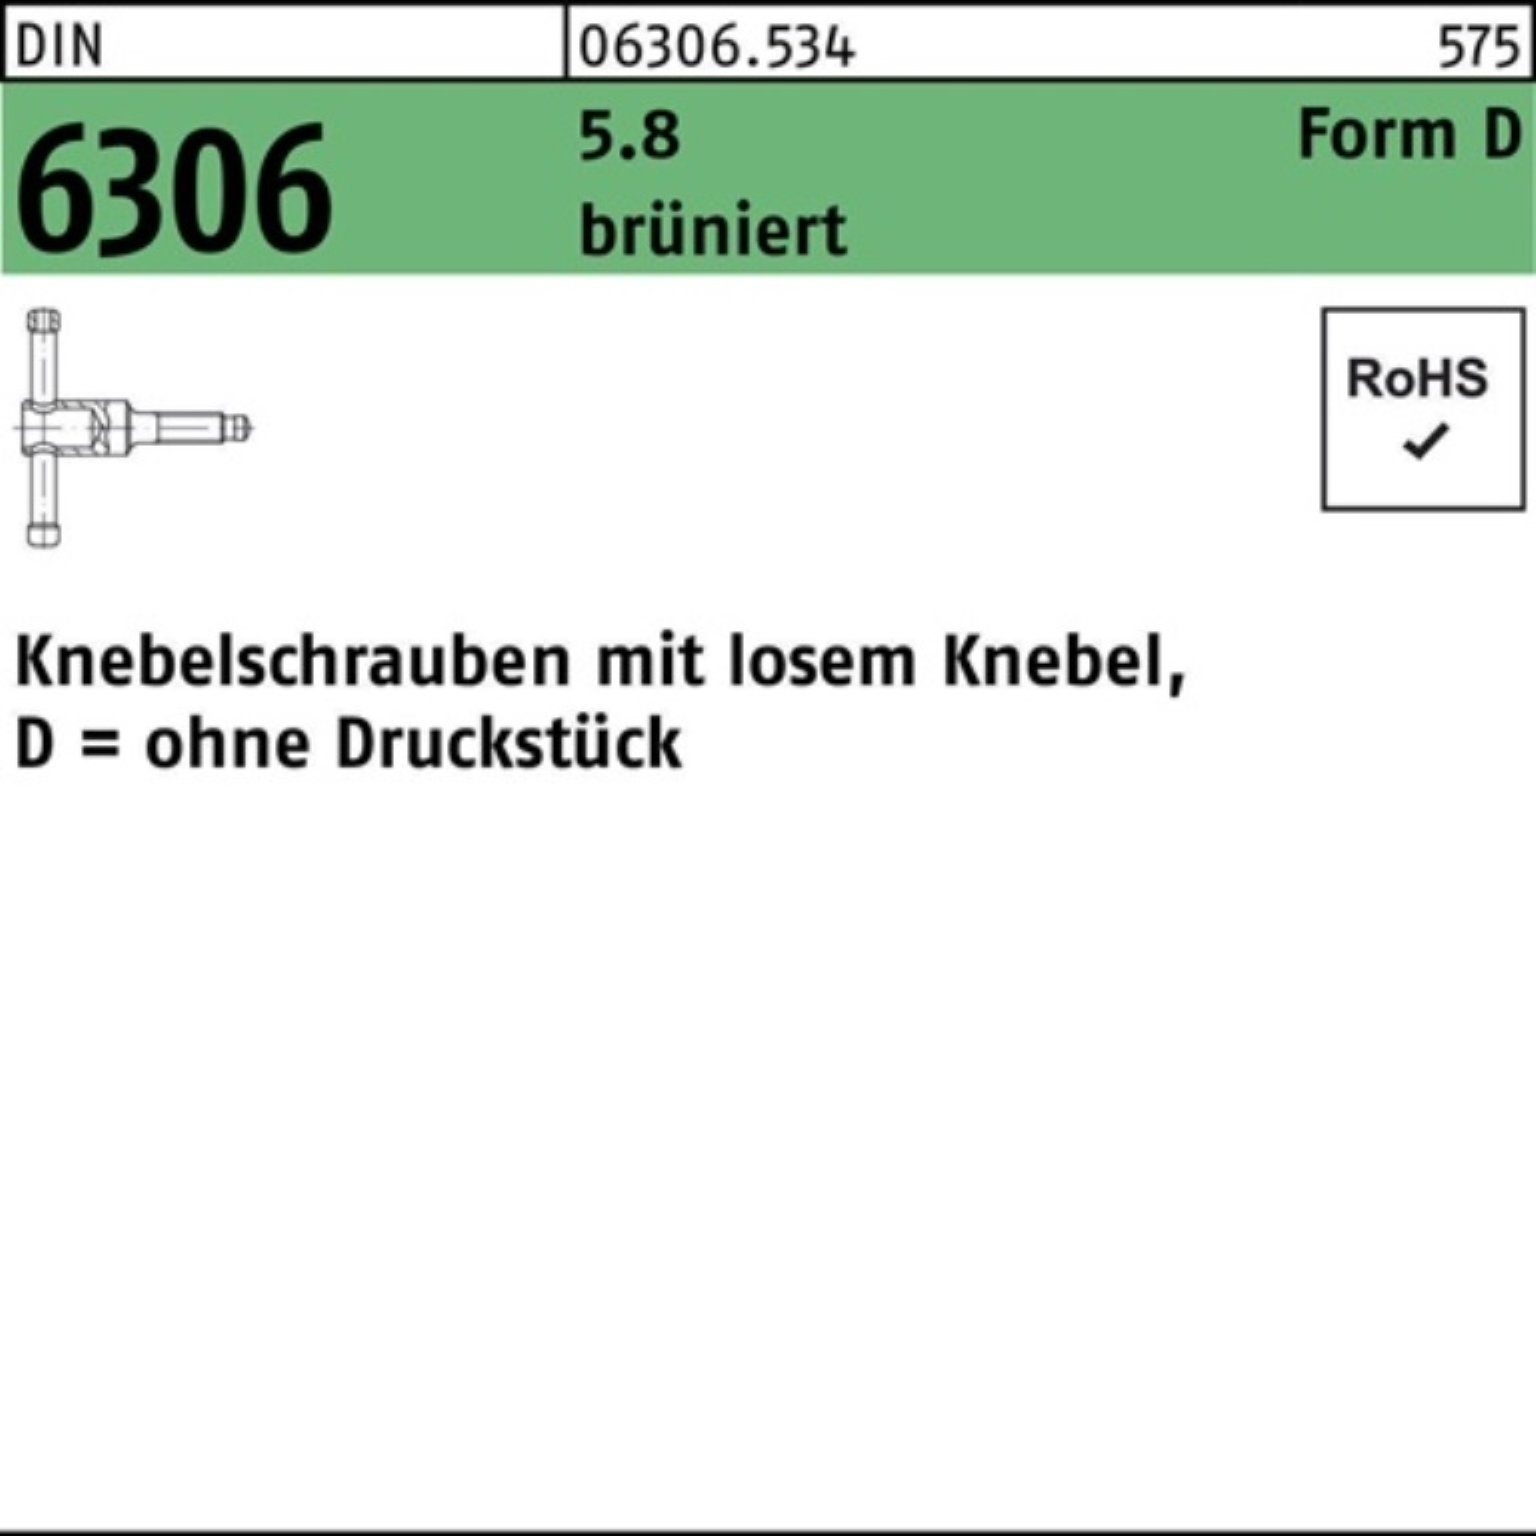 DM DIN Pack 100er 6306 losen Knebelschraube brünier 16x Schraube Knebel 55 Reyher 5.8